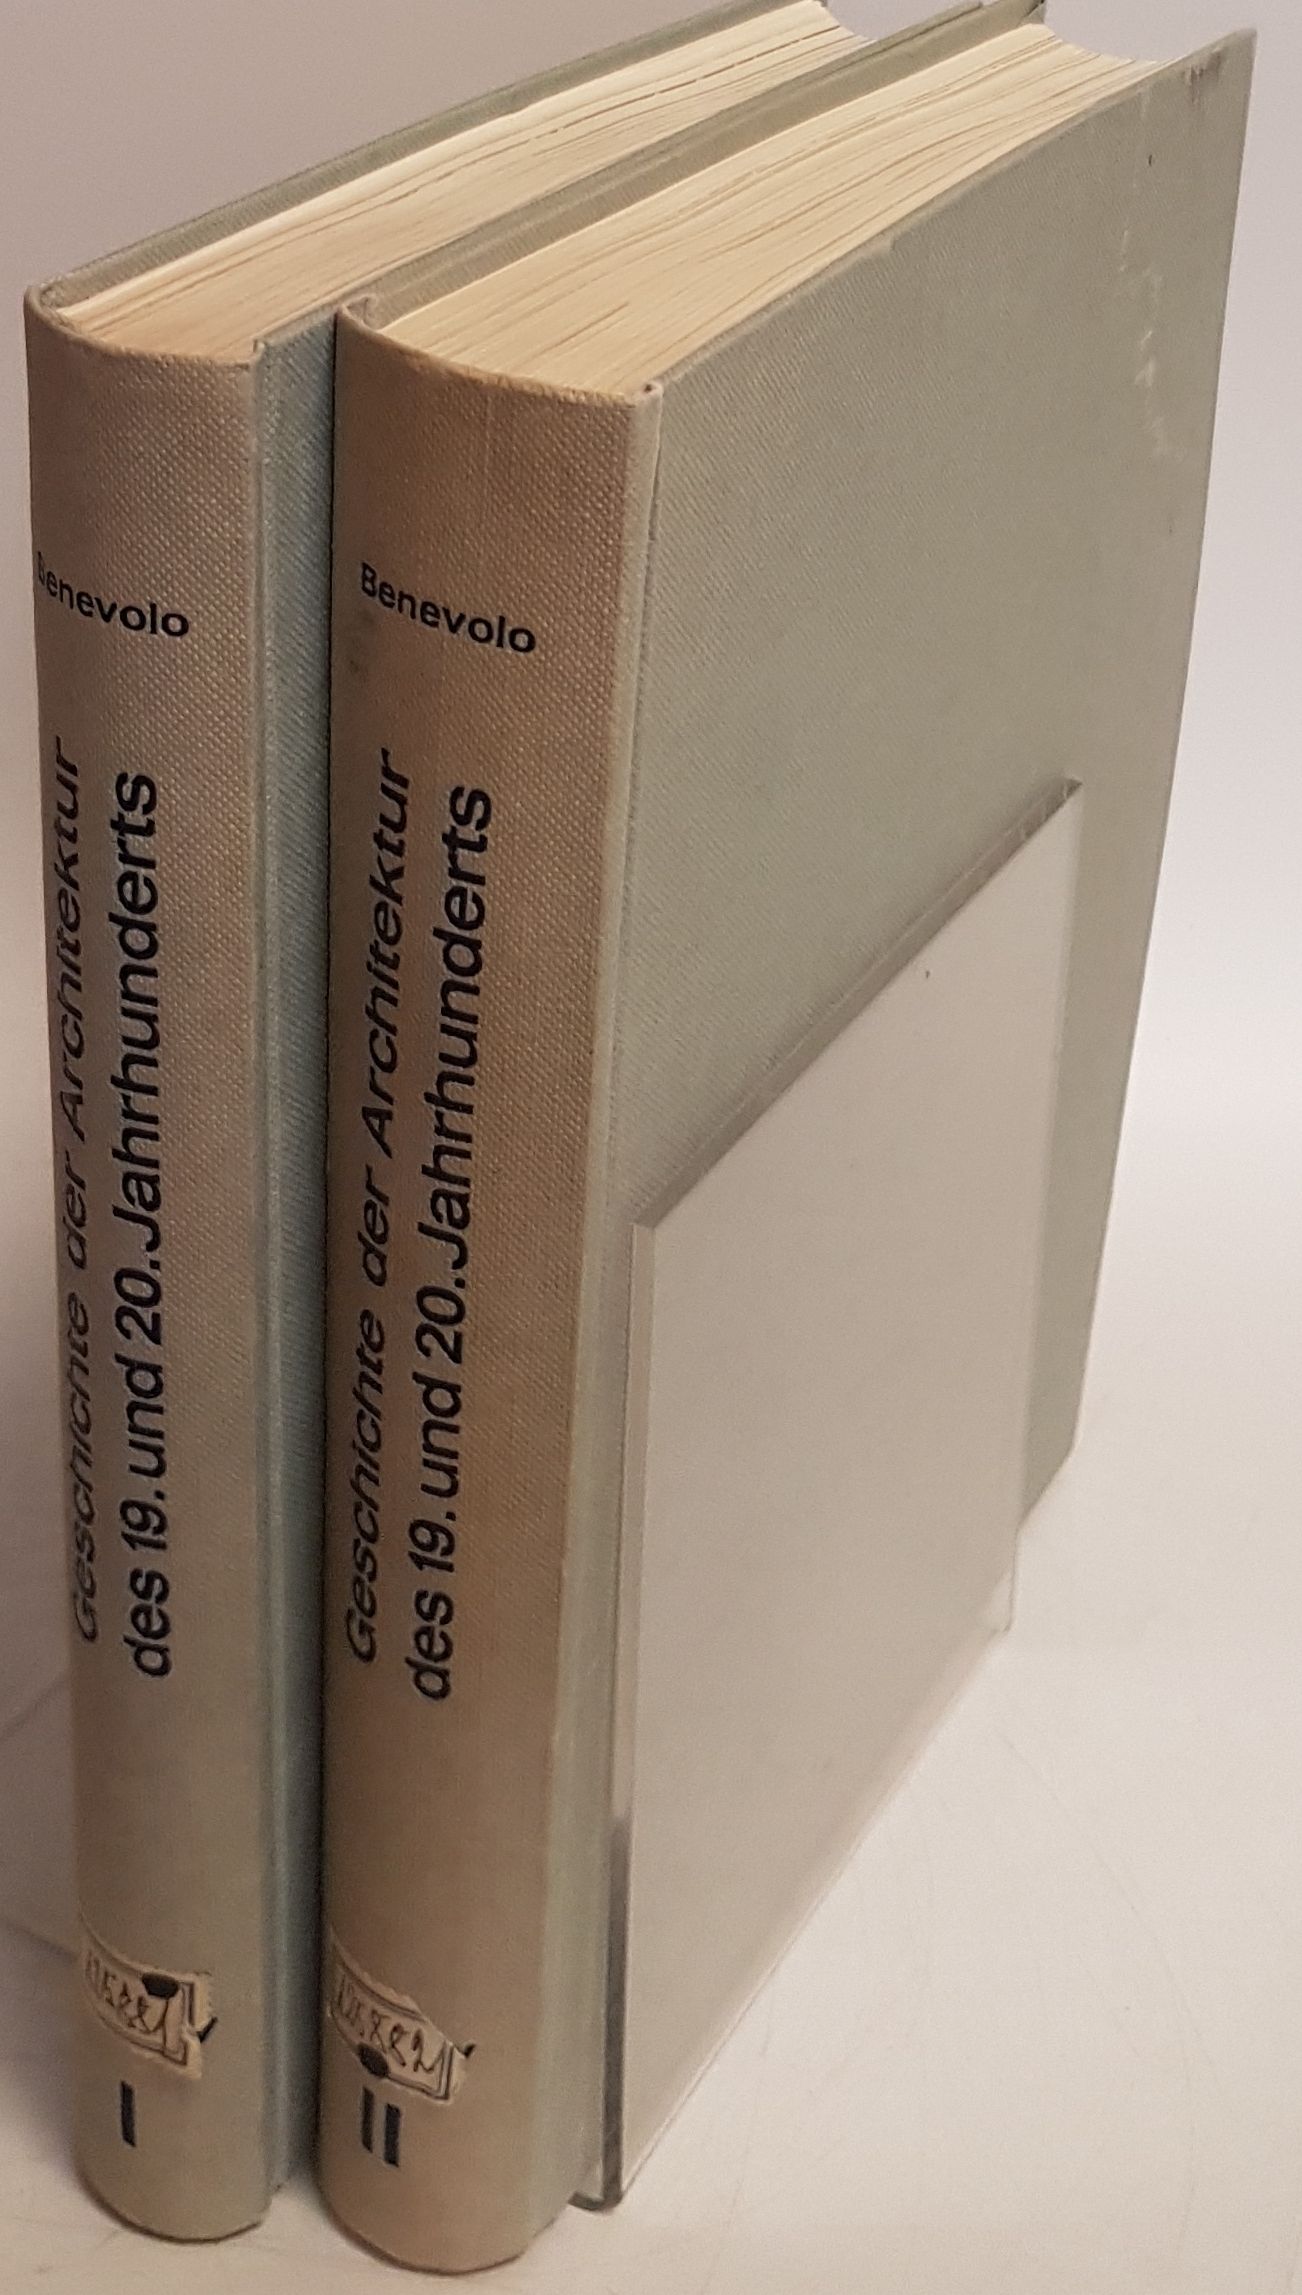 Geschichte der Architektur des 19. und 20. Jahrhunderts (2 Bände KOMPLETT) - Benevolo, Leonardo